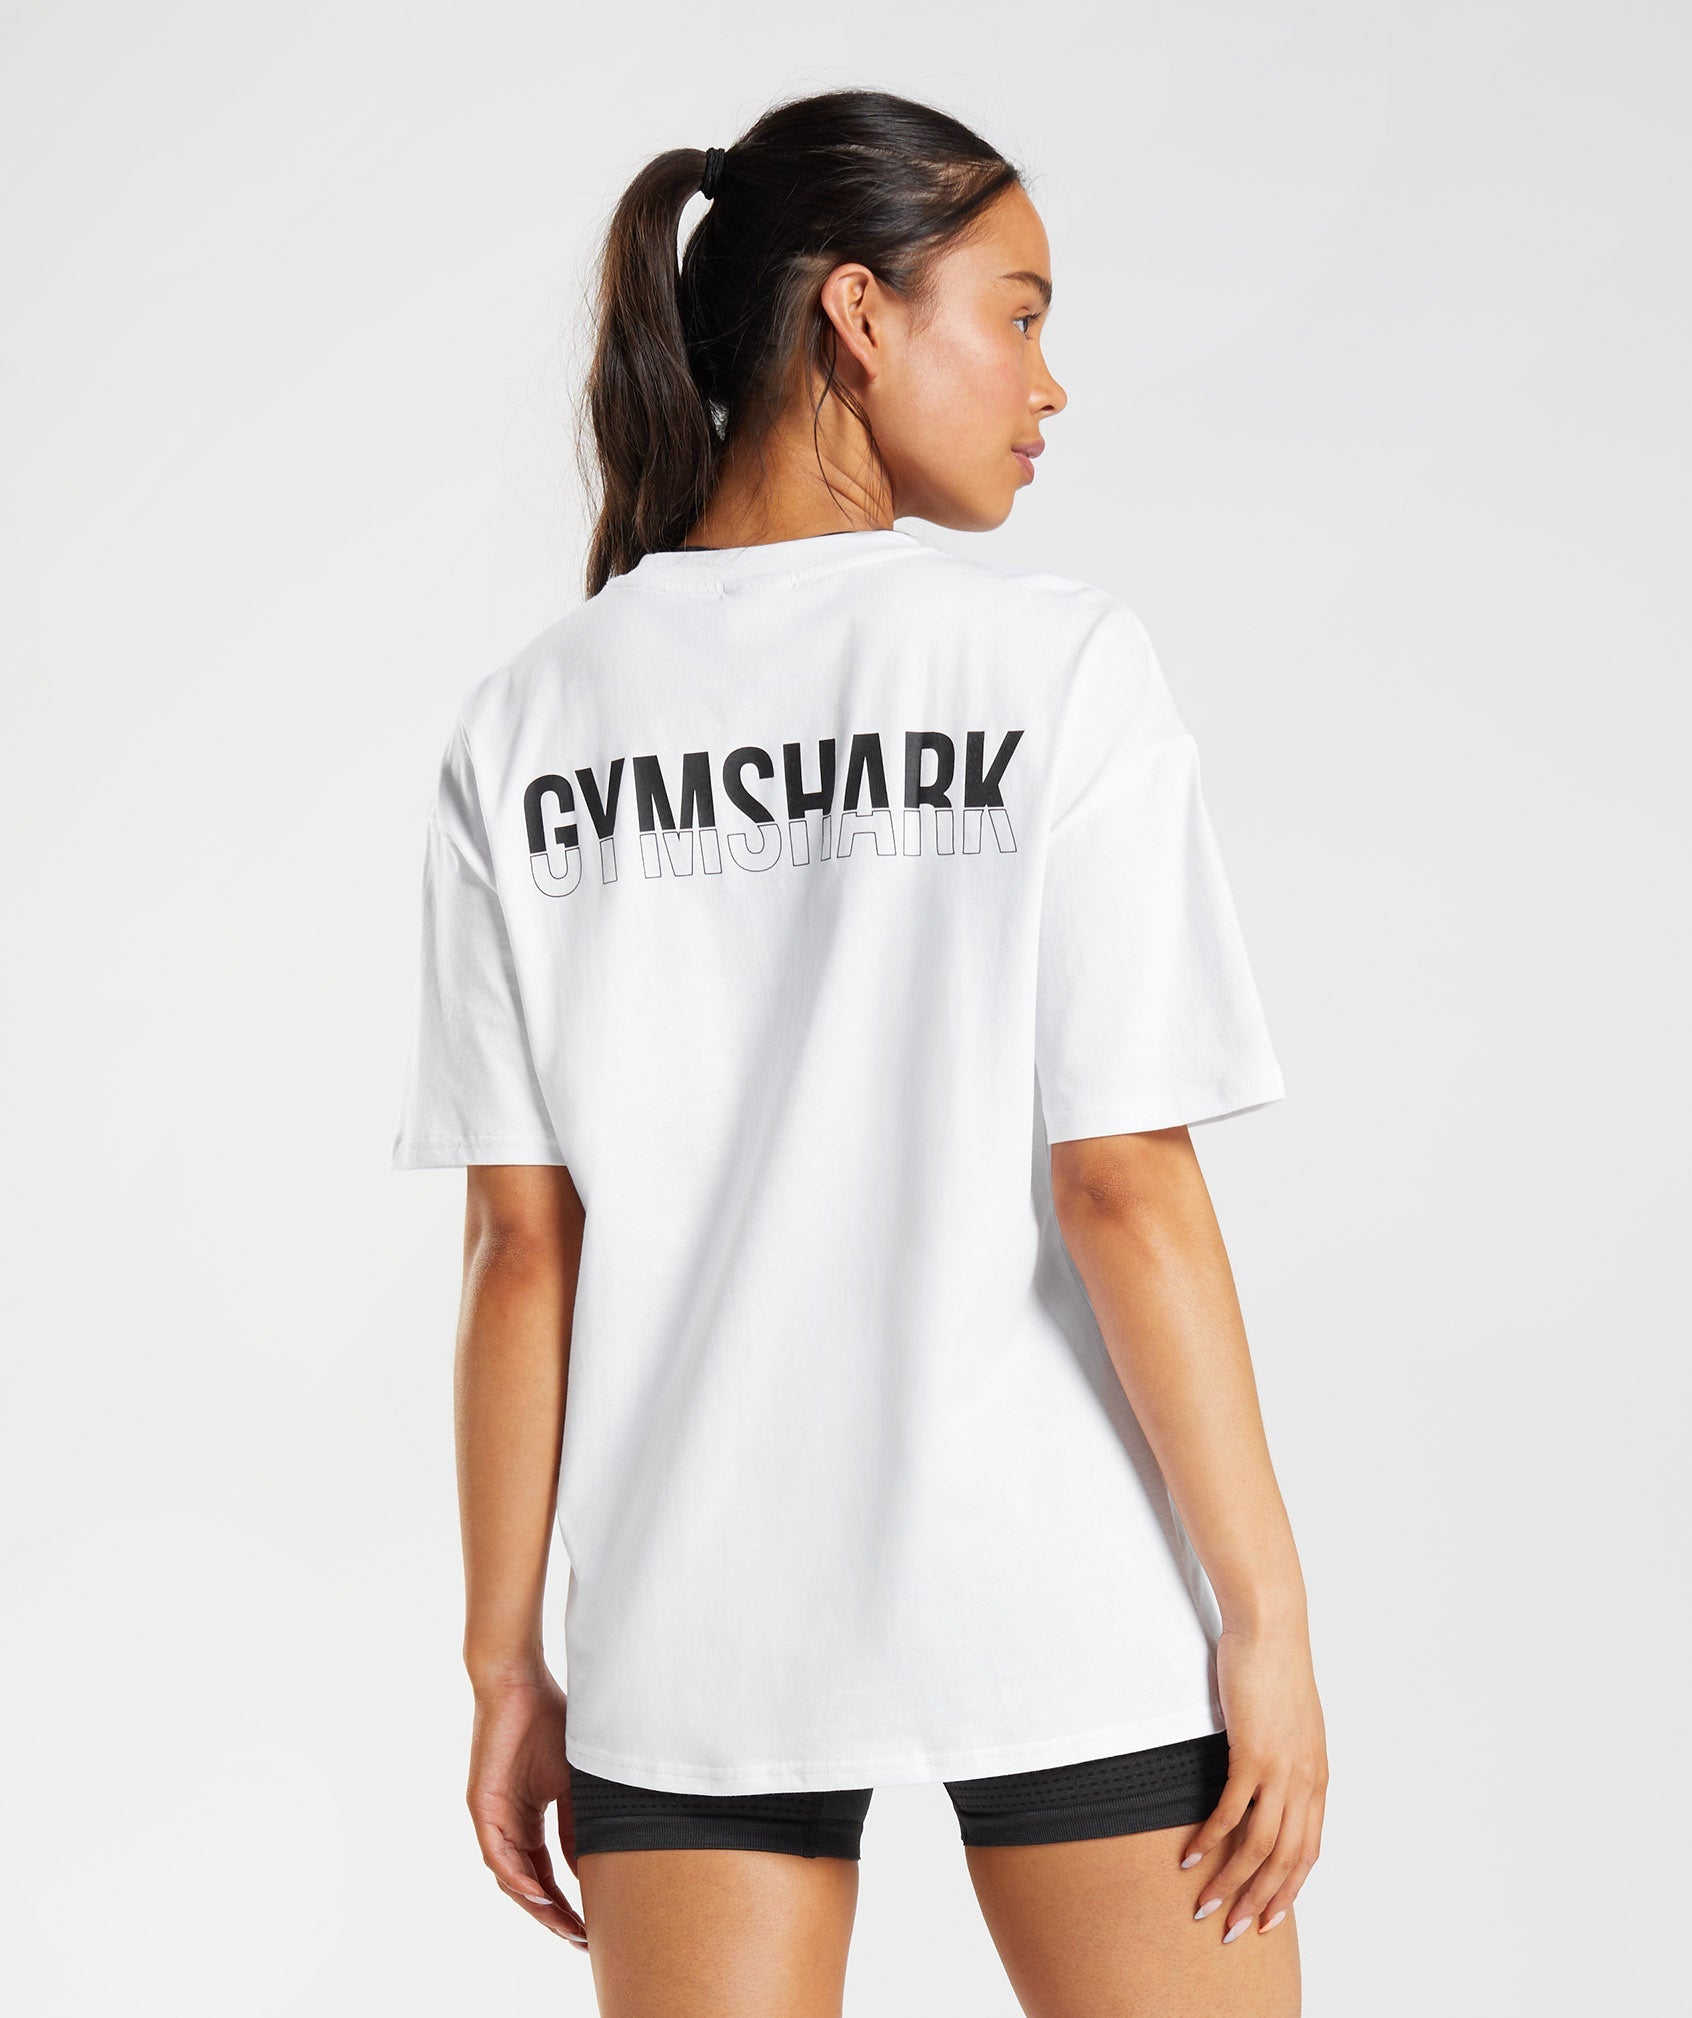 Short Sleeve Women's Workout Shirts